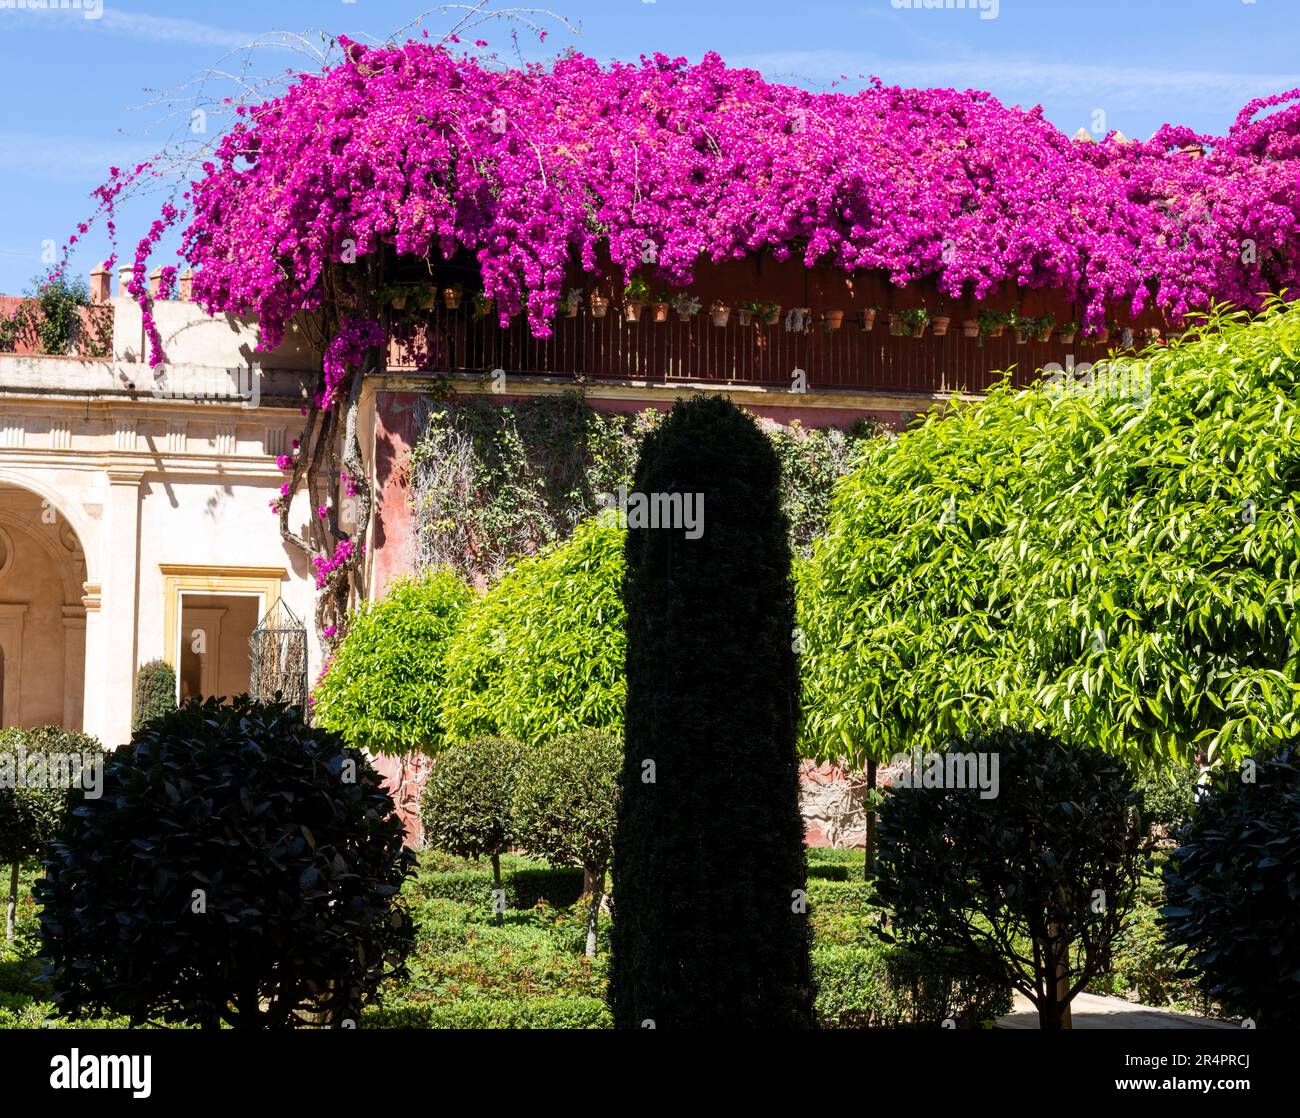 Spanien, Sevilla, Andalusien, eine Casa de Pilatos (Pilatenhaus), Garten mit verschiedenen Formen von Sträuchern, Bougainvillea in Blüte. Stockfoto